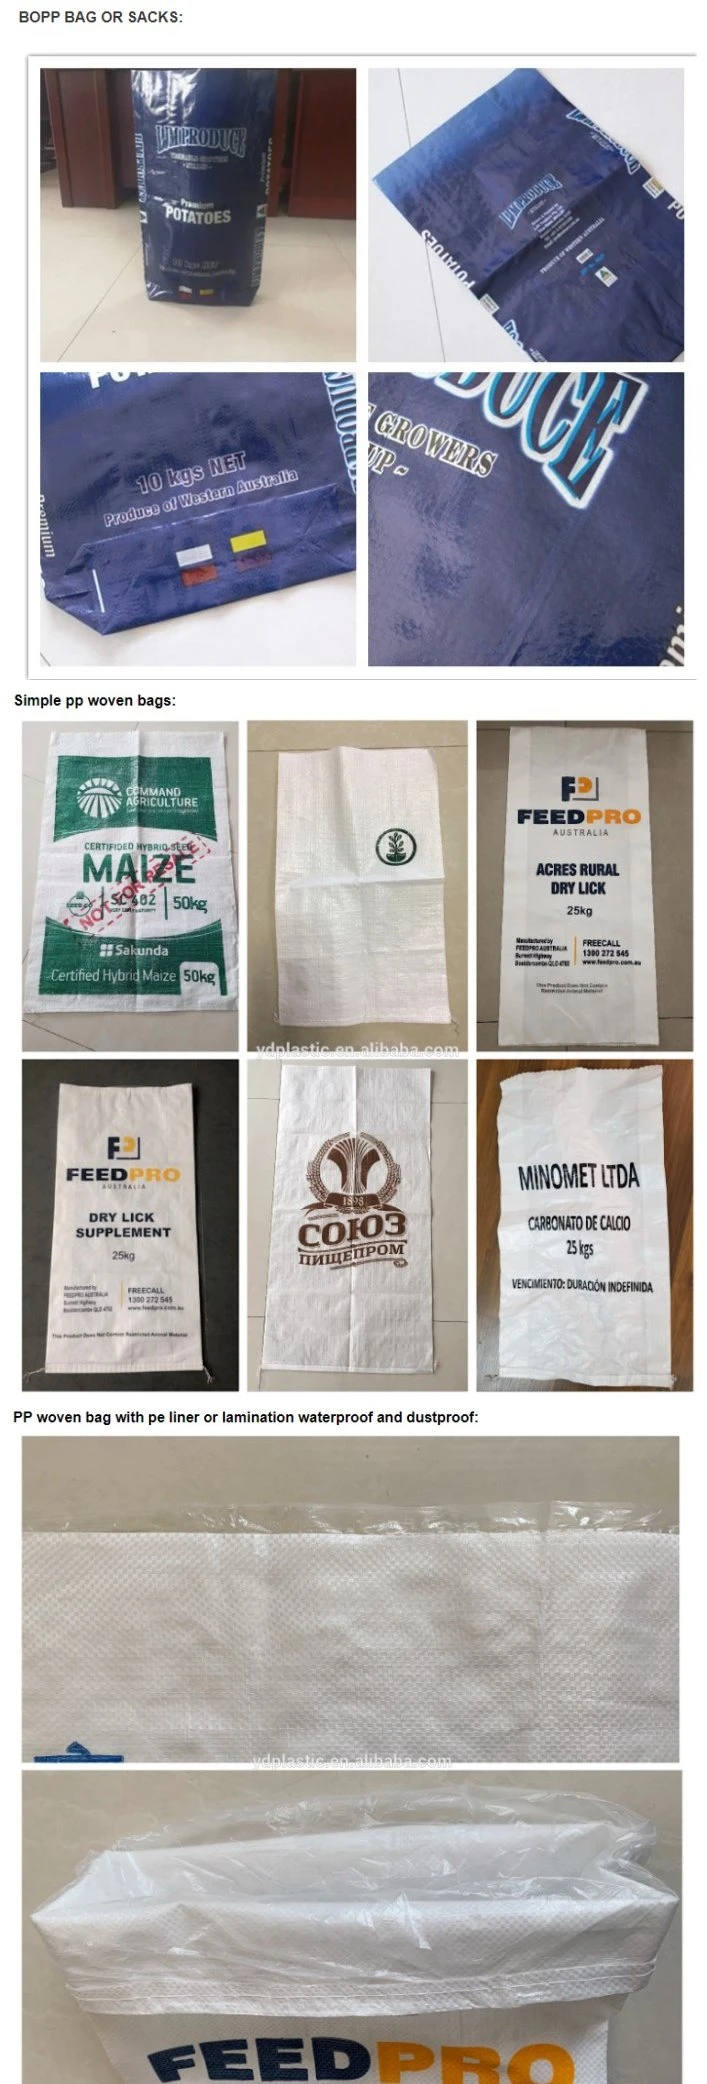 Polypropylene Bag Sand Plastic BOPP PP Woven Bag for Agricultural Dog Animal Feed Fertilizer Sugar 25kg Packing Bag